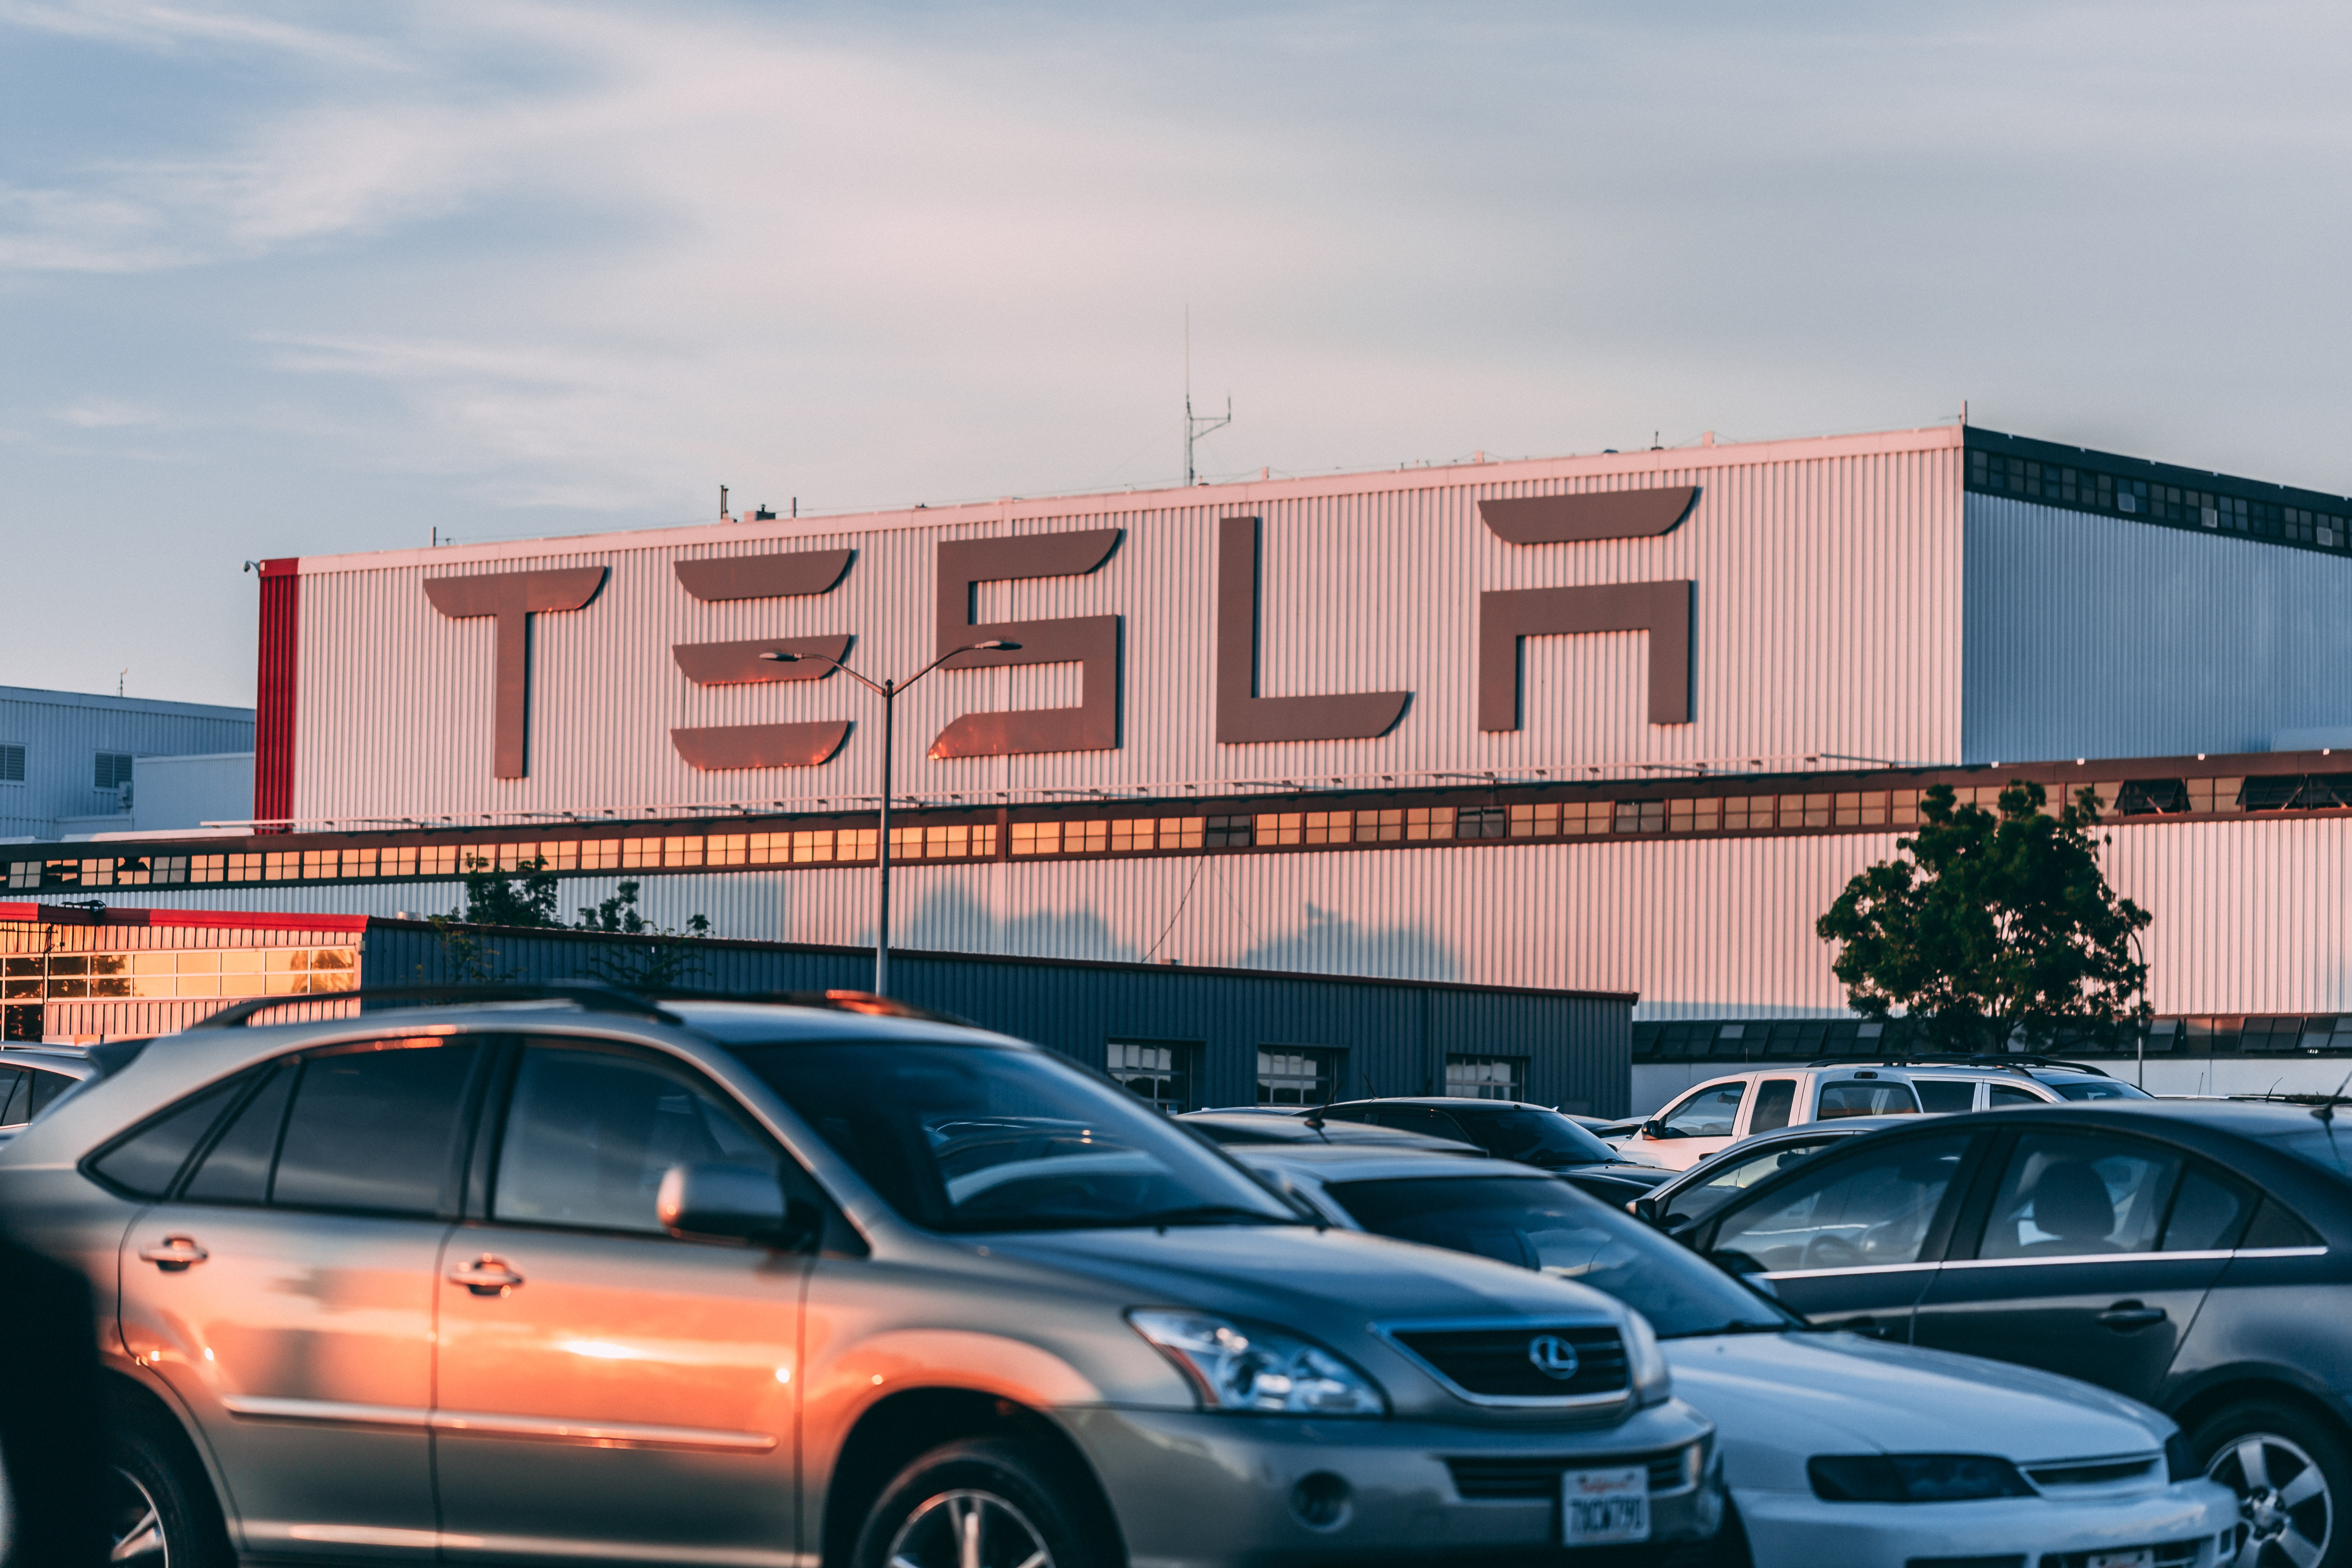 Tesla, el gigante automotriz de los automóviles eléctricos, dejará de realizar operaciones en Bitcoin, lo que ya ha puesto nuevamente el debate sobre el impacto ambiental de las criptomonedas. Crédito: Craig Adderley